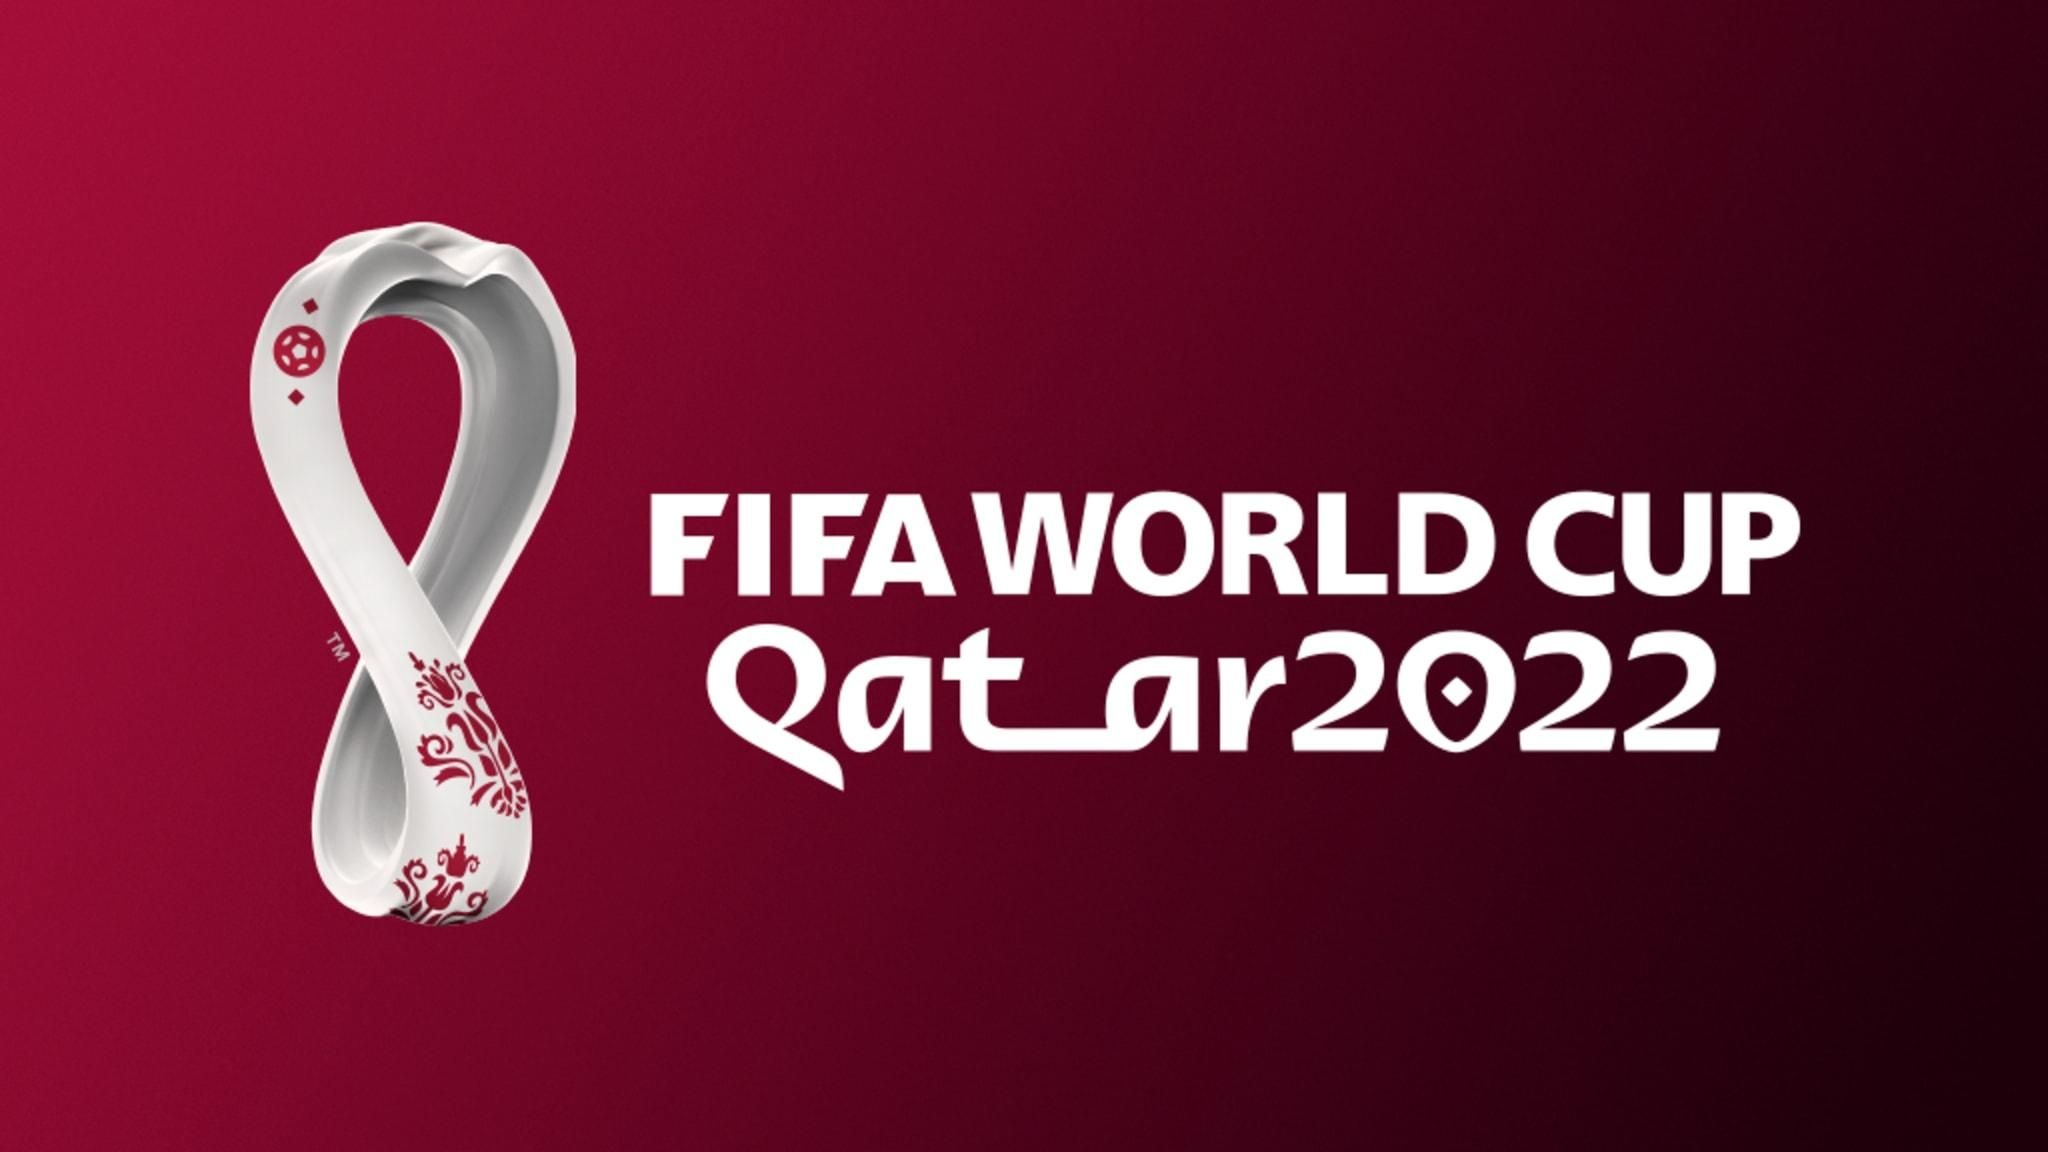 Опубликован календарь матчей ЧМ-2022 в Катаре: по четыре игры в день, первые в 13:00